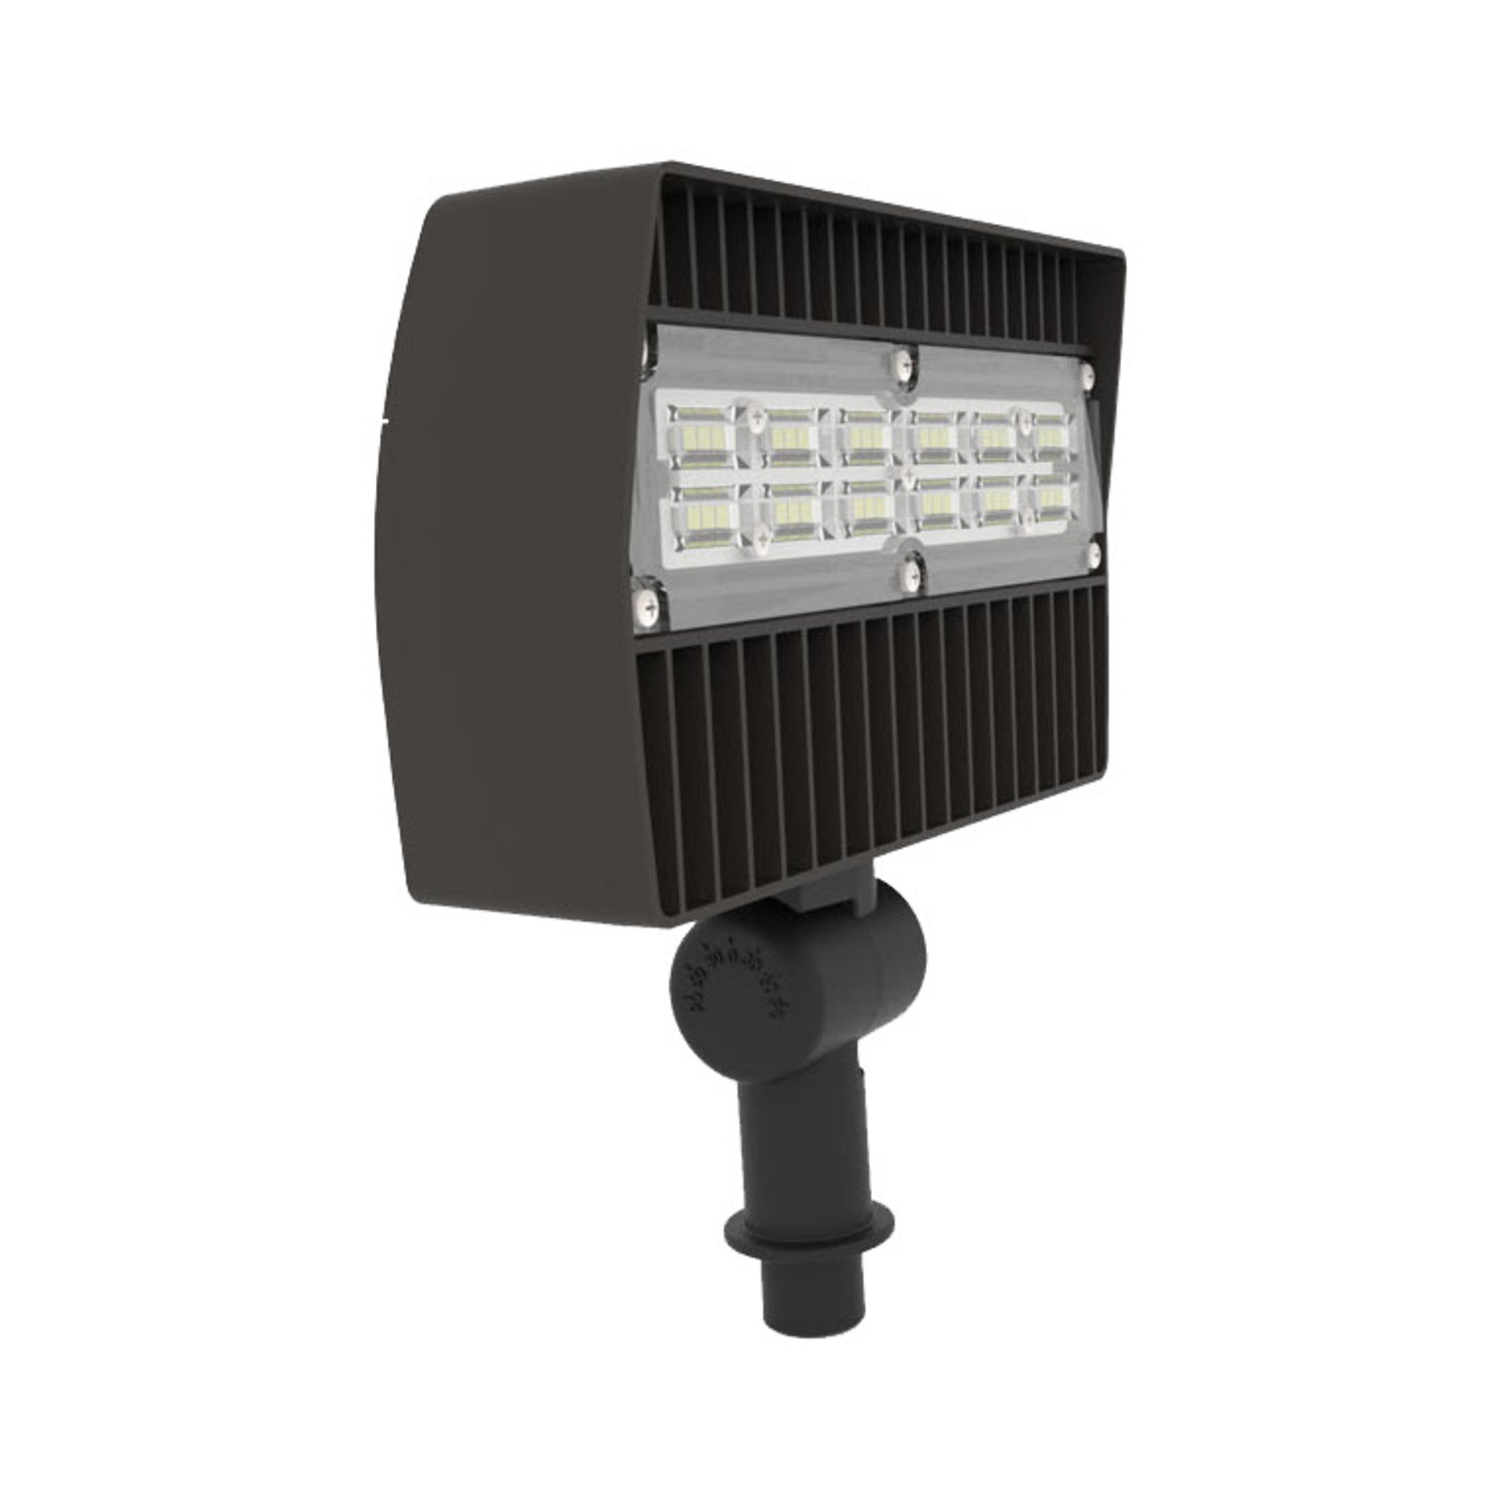 LED Mini Flood Light, U-Bracket Mount, Black, 45W, 5600 Lumens